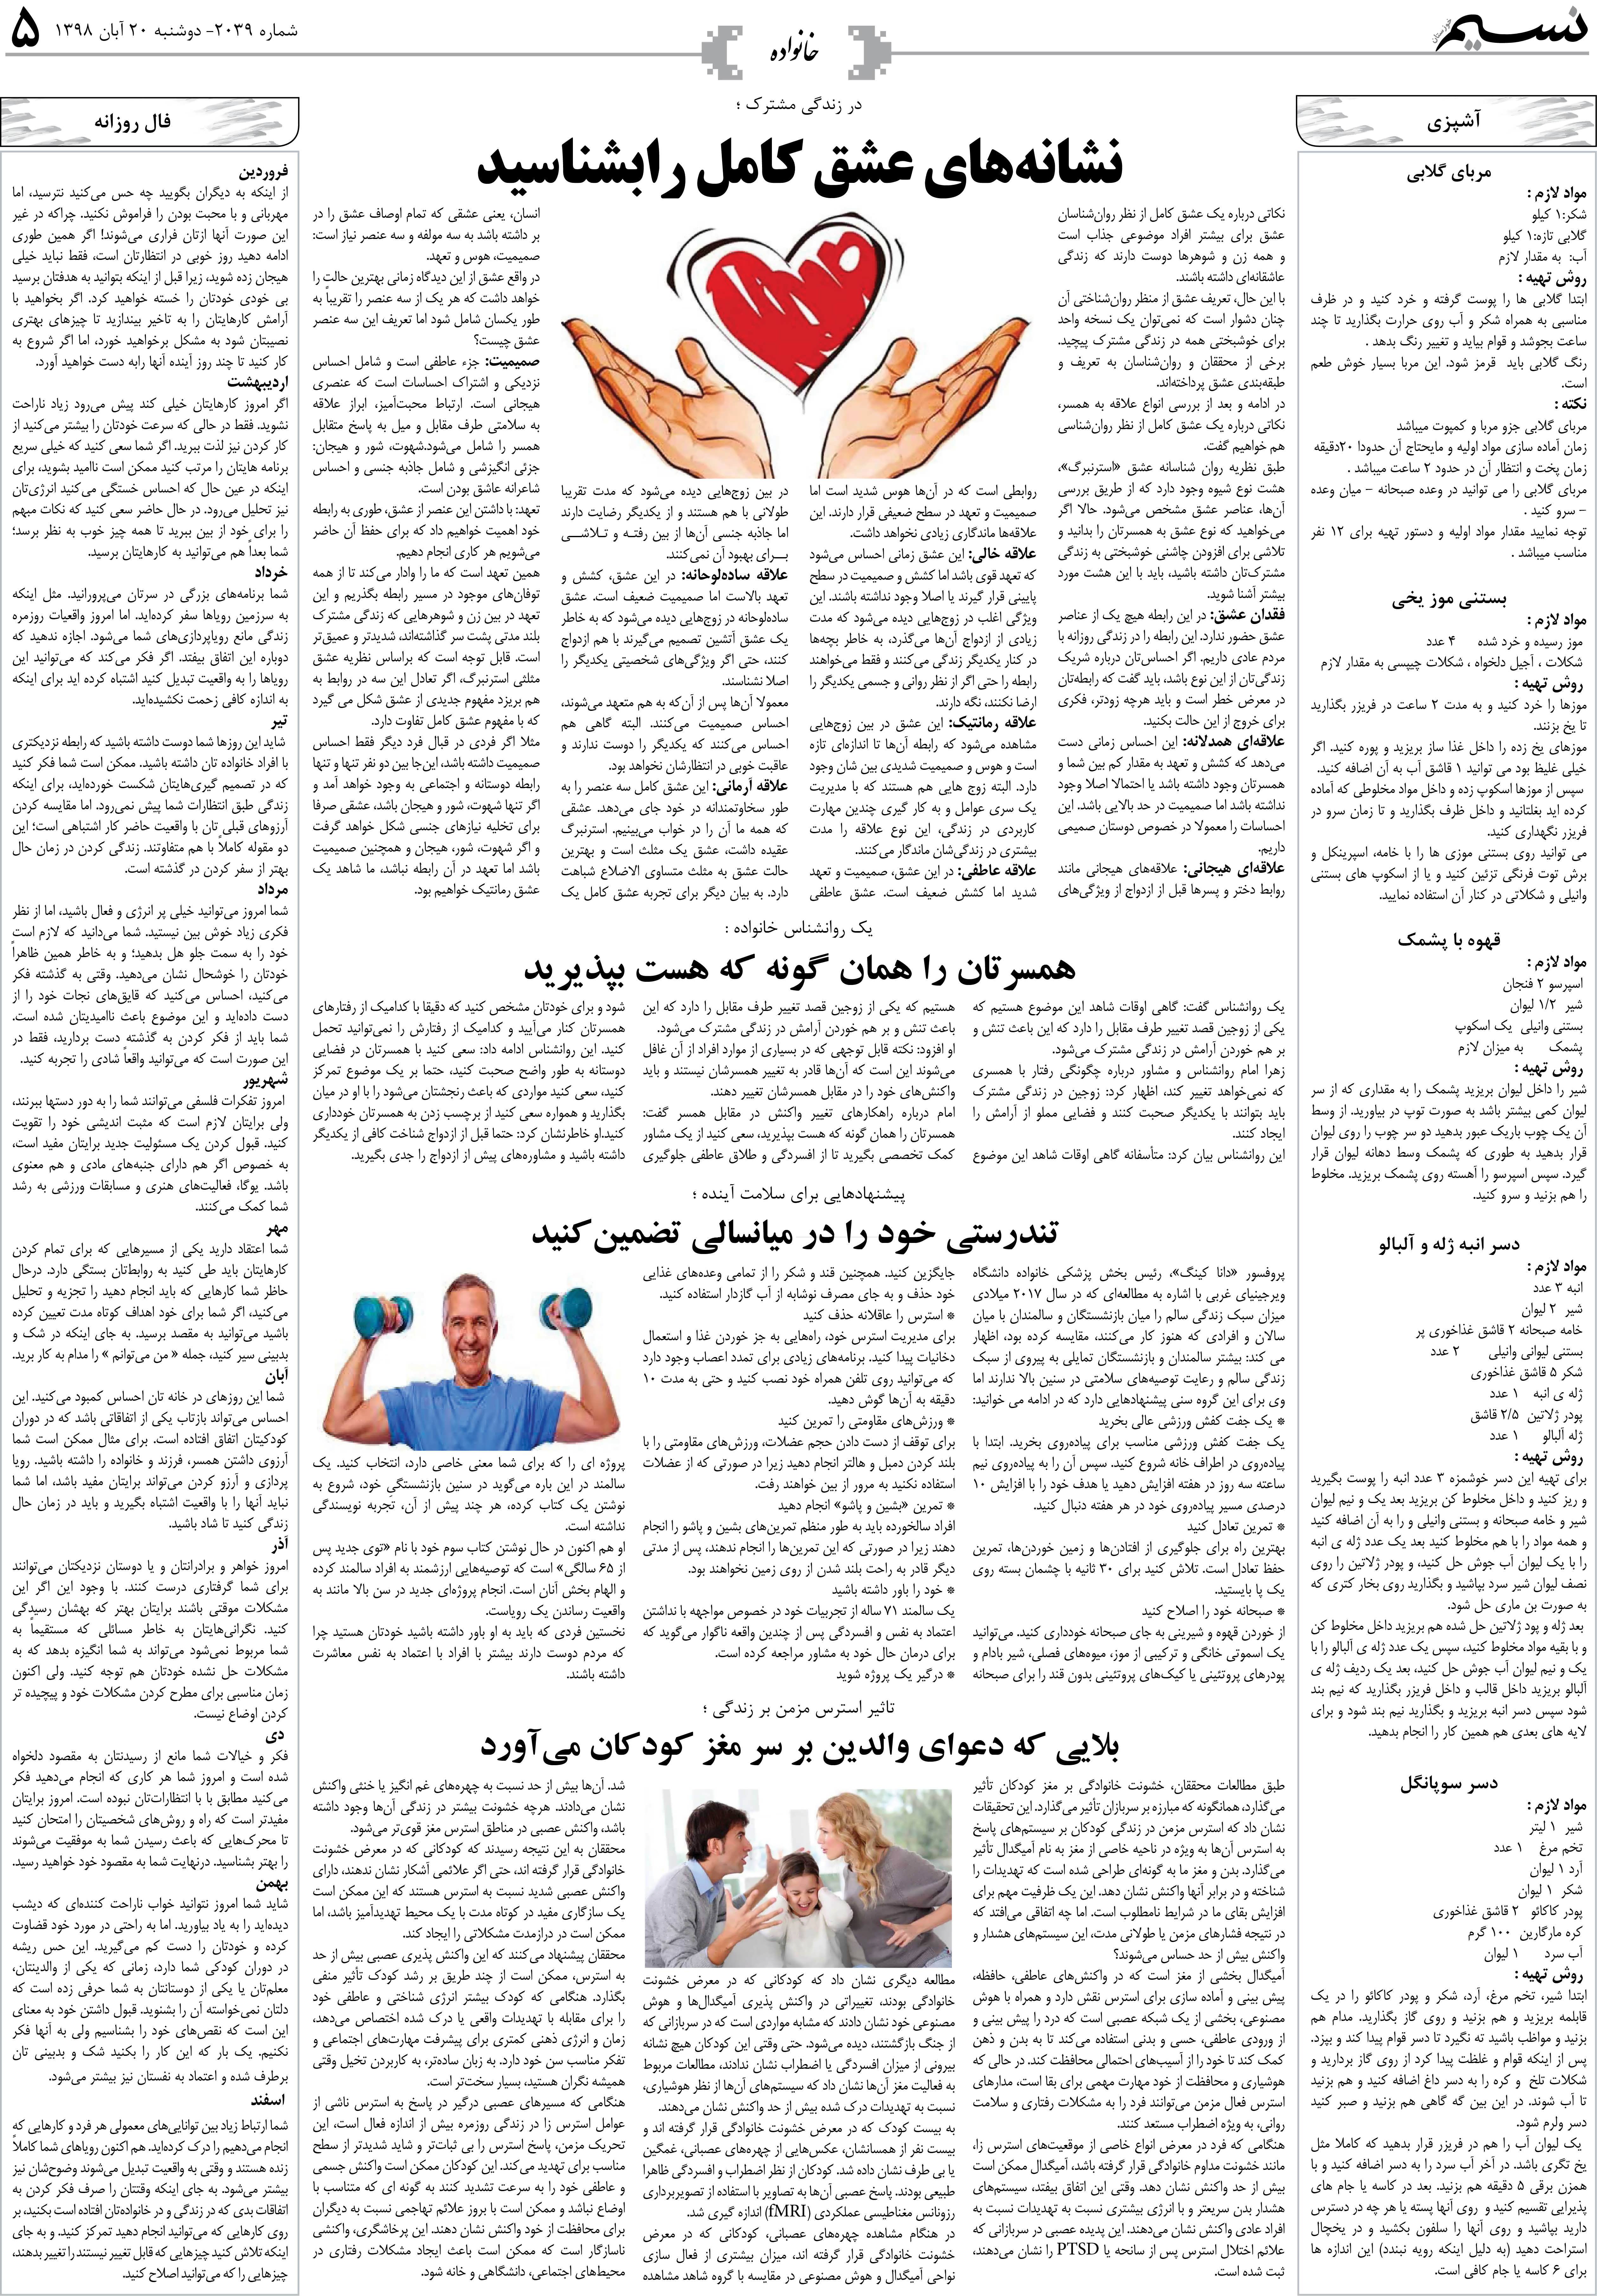 صفحه خانواده روزنامه نسیم شماره 2039